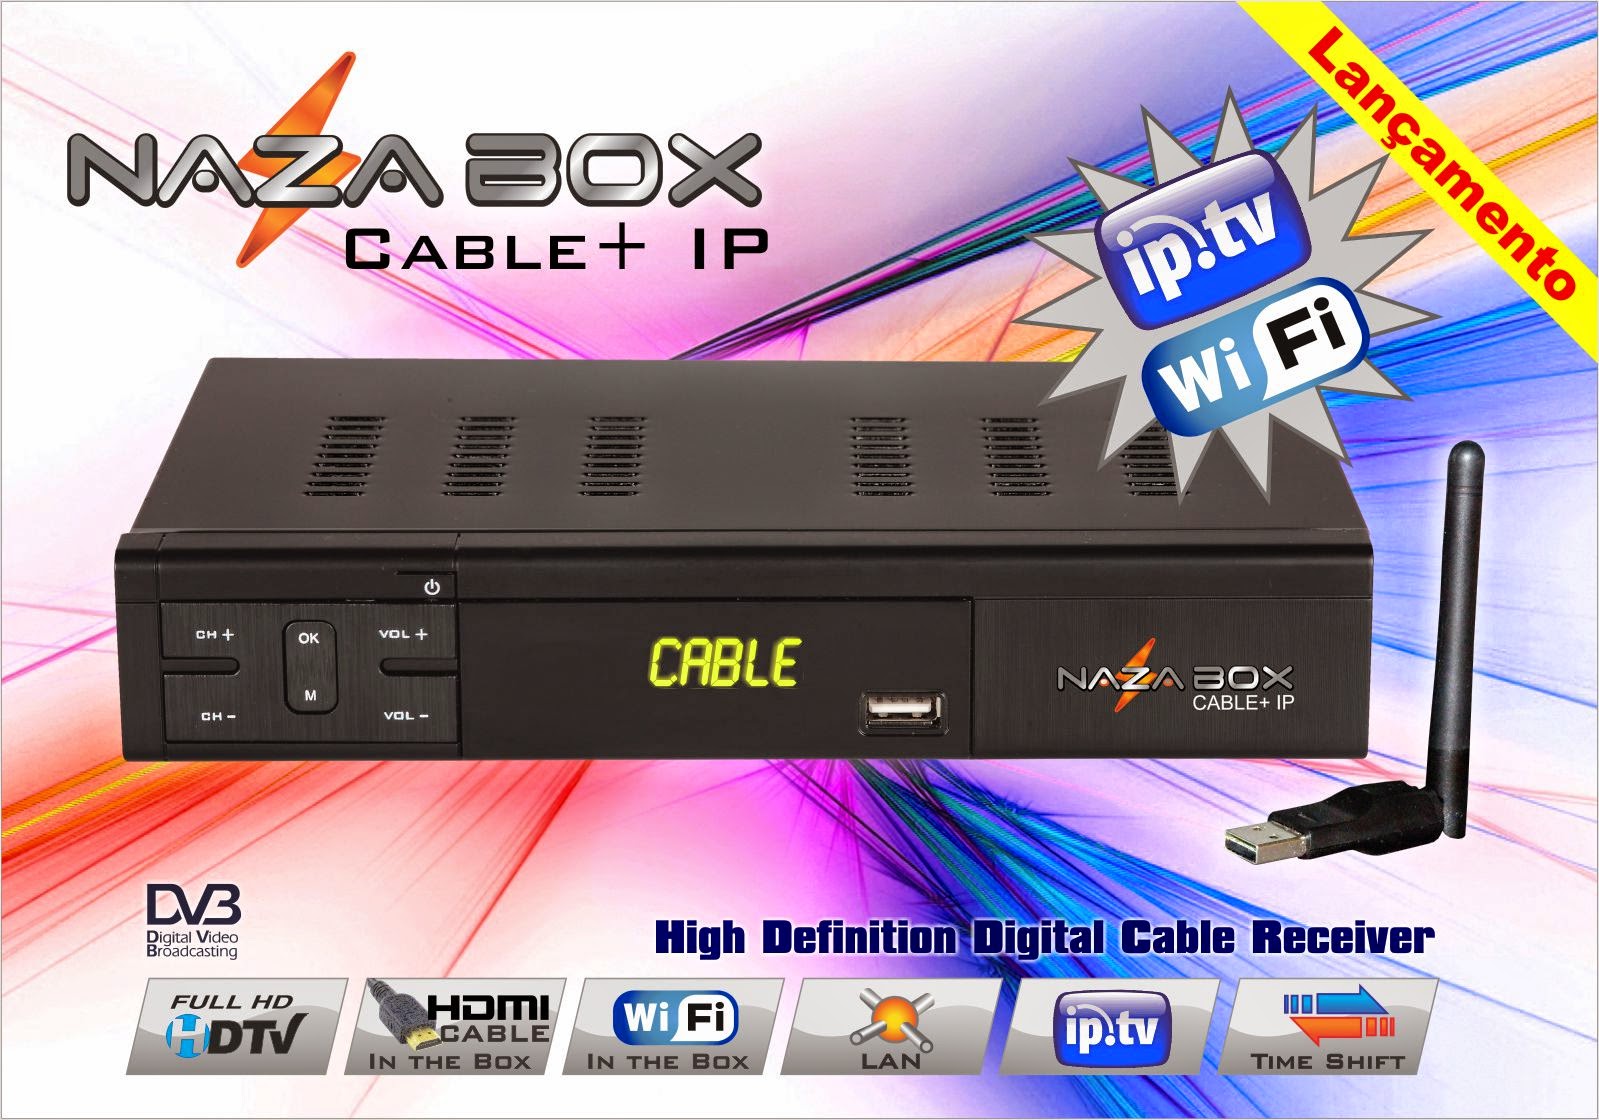 iptv - Nova Atualização Nazabox Cable +iptv   HD.data 02/07/2014. Panfleto+Cable++IP